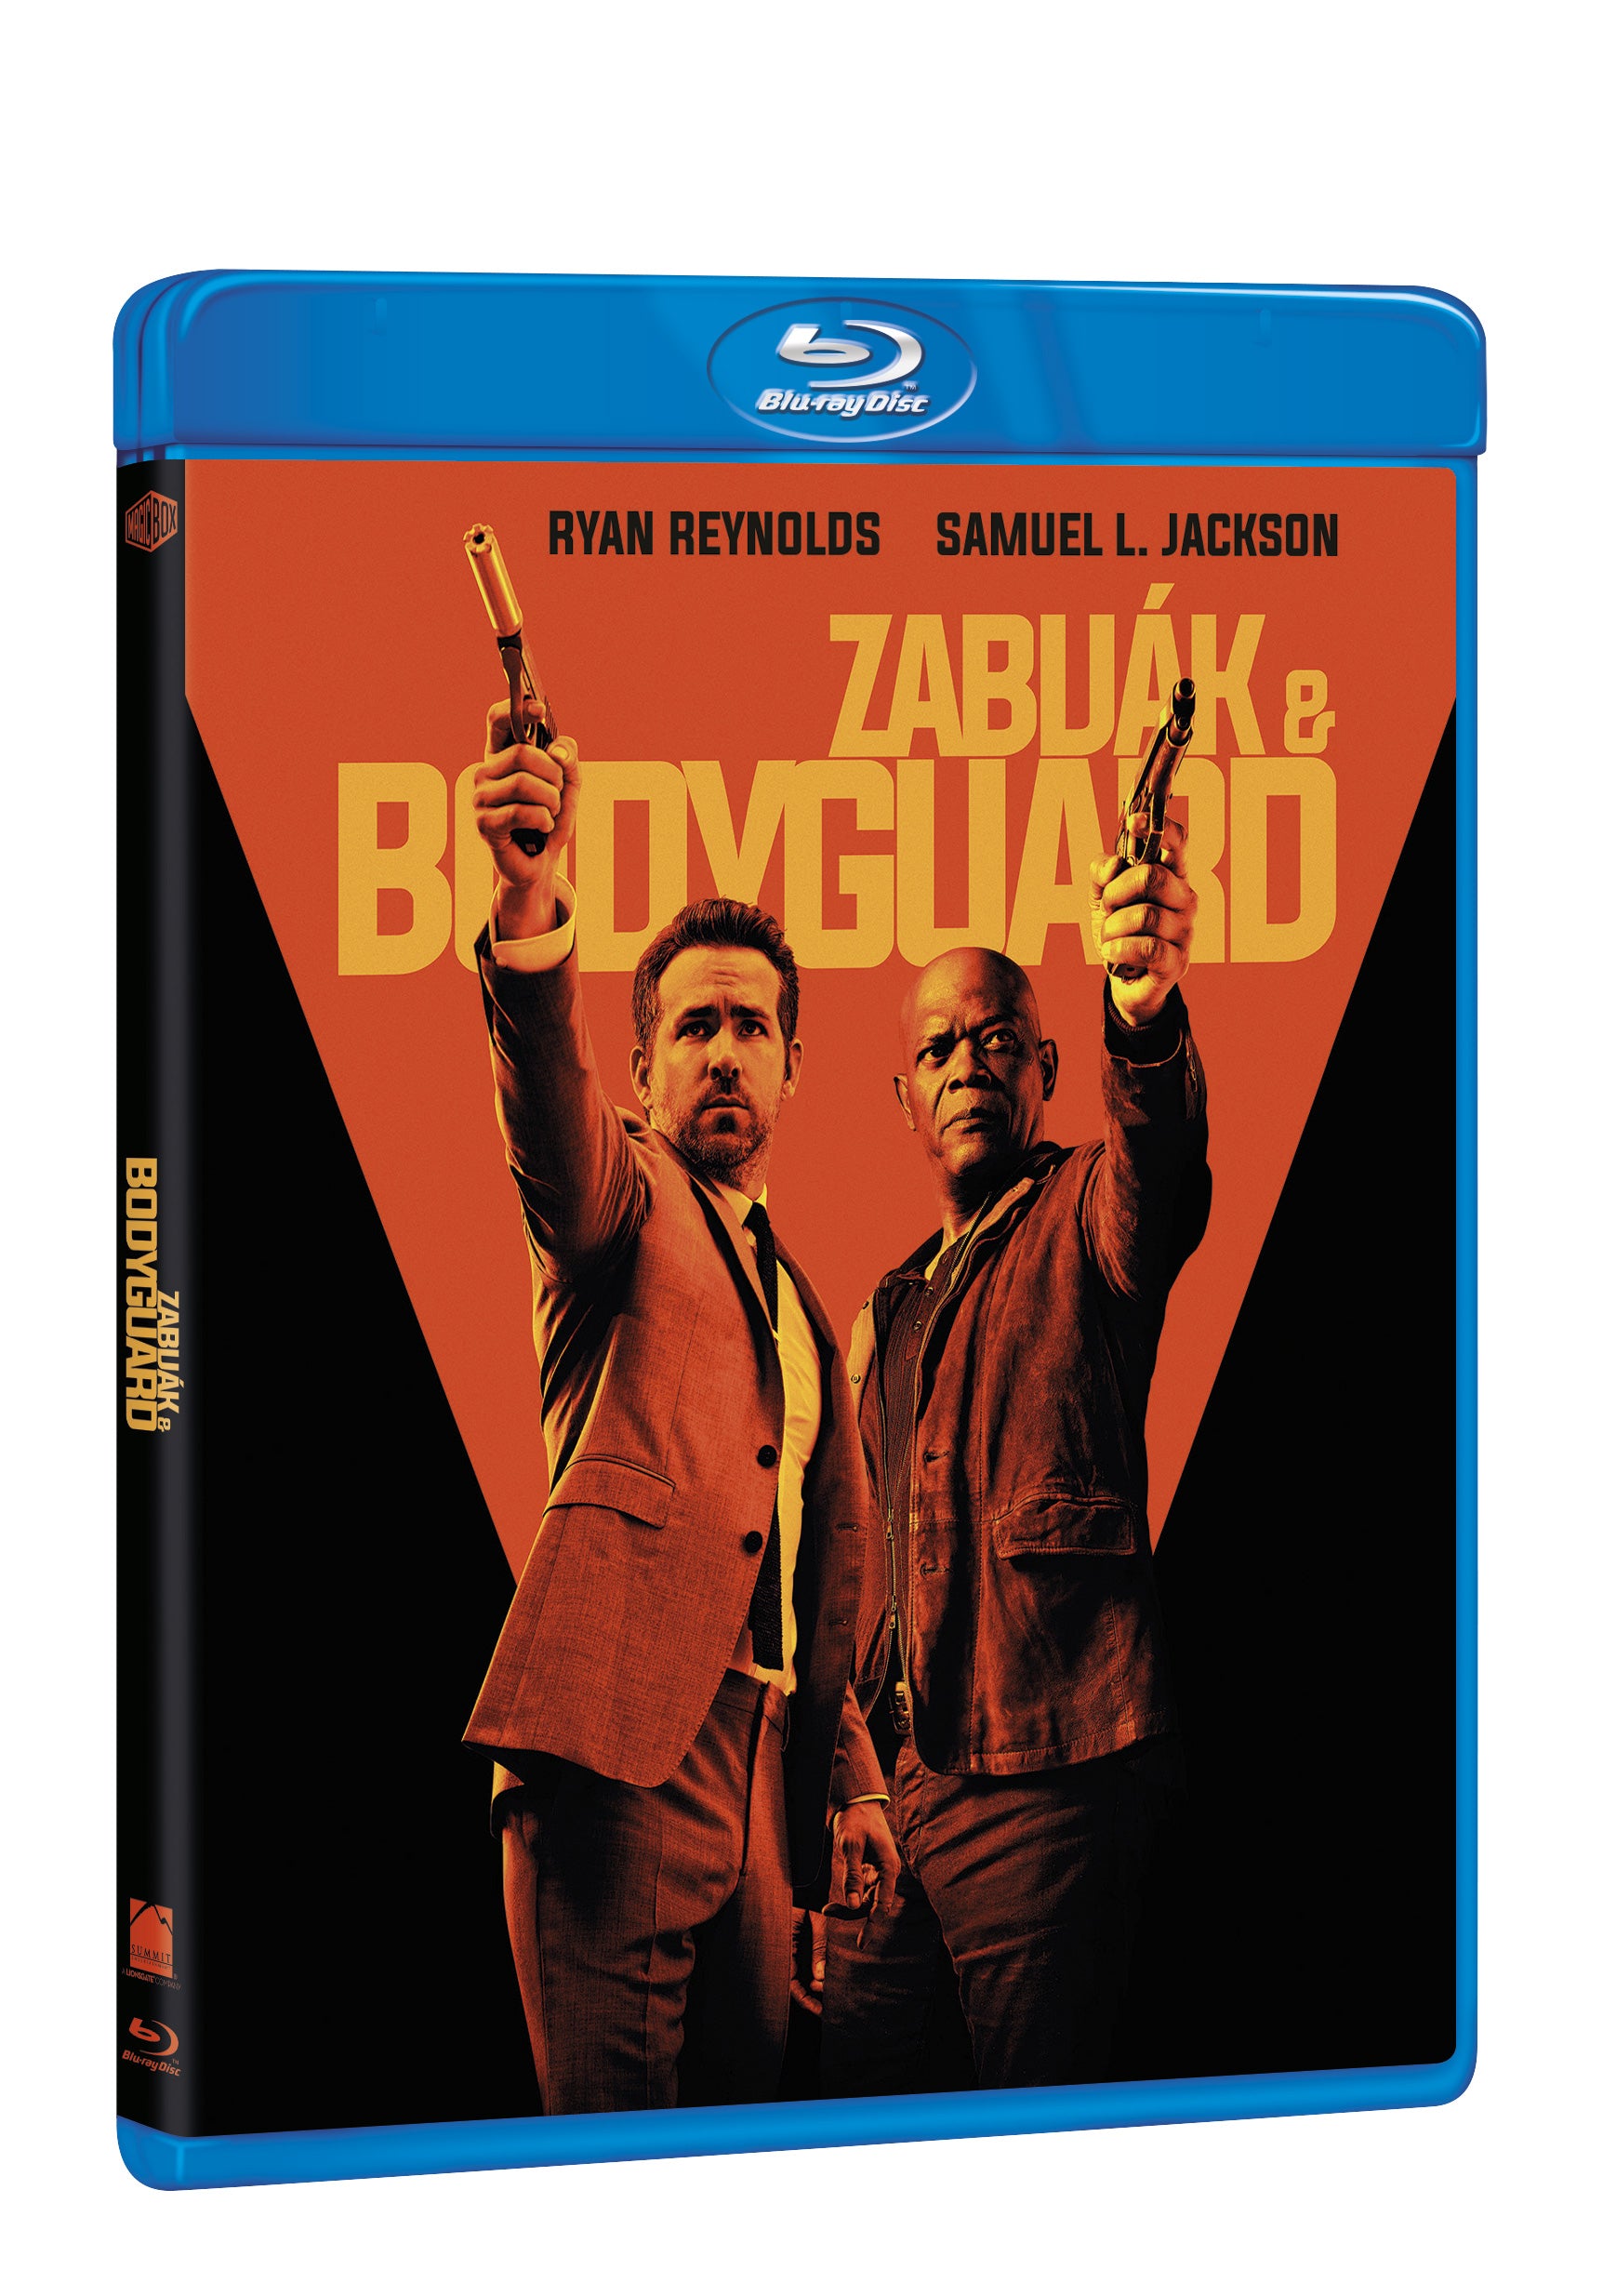 Zabijak & bodyguard BD / Hitman's Bodyguard - Czech version